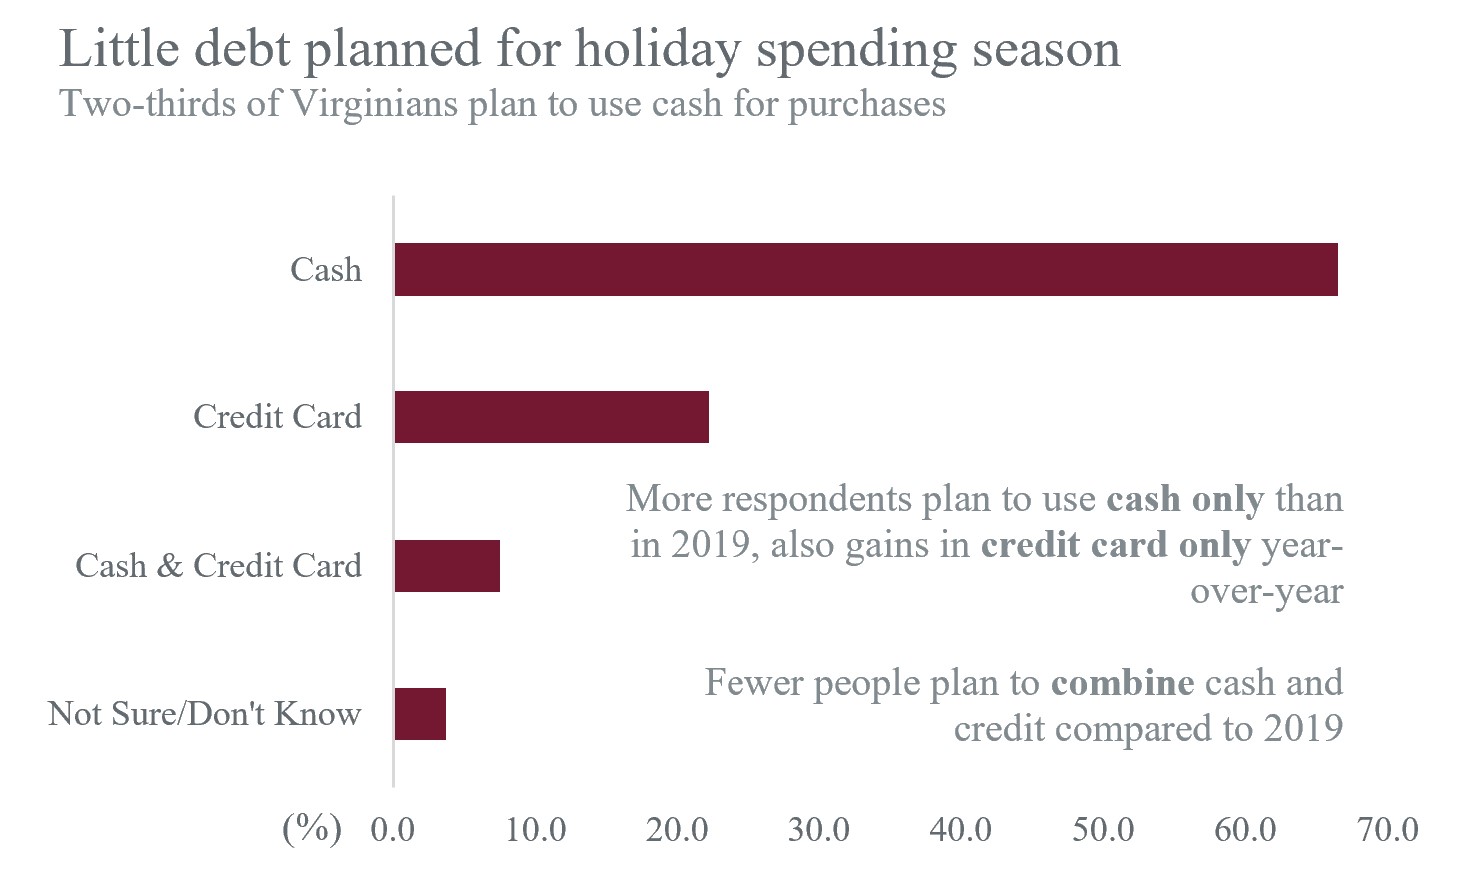 Little debt planned for holiday spending season